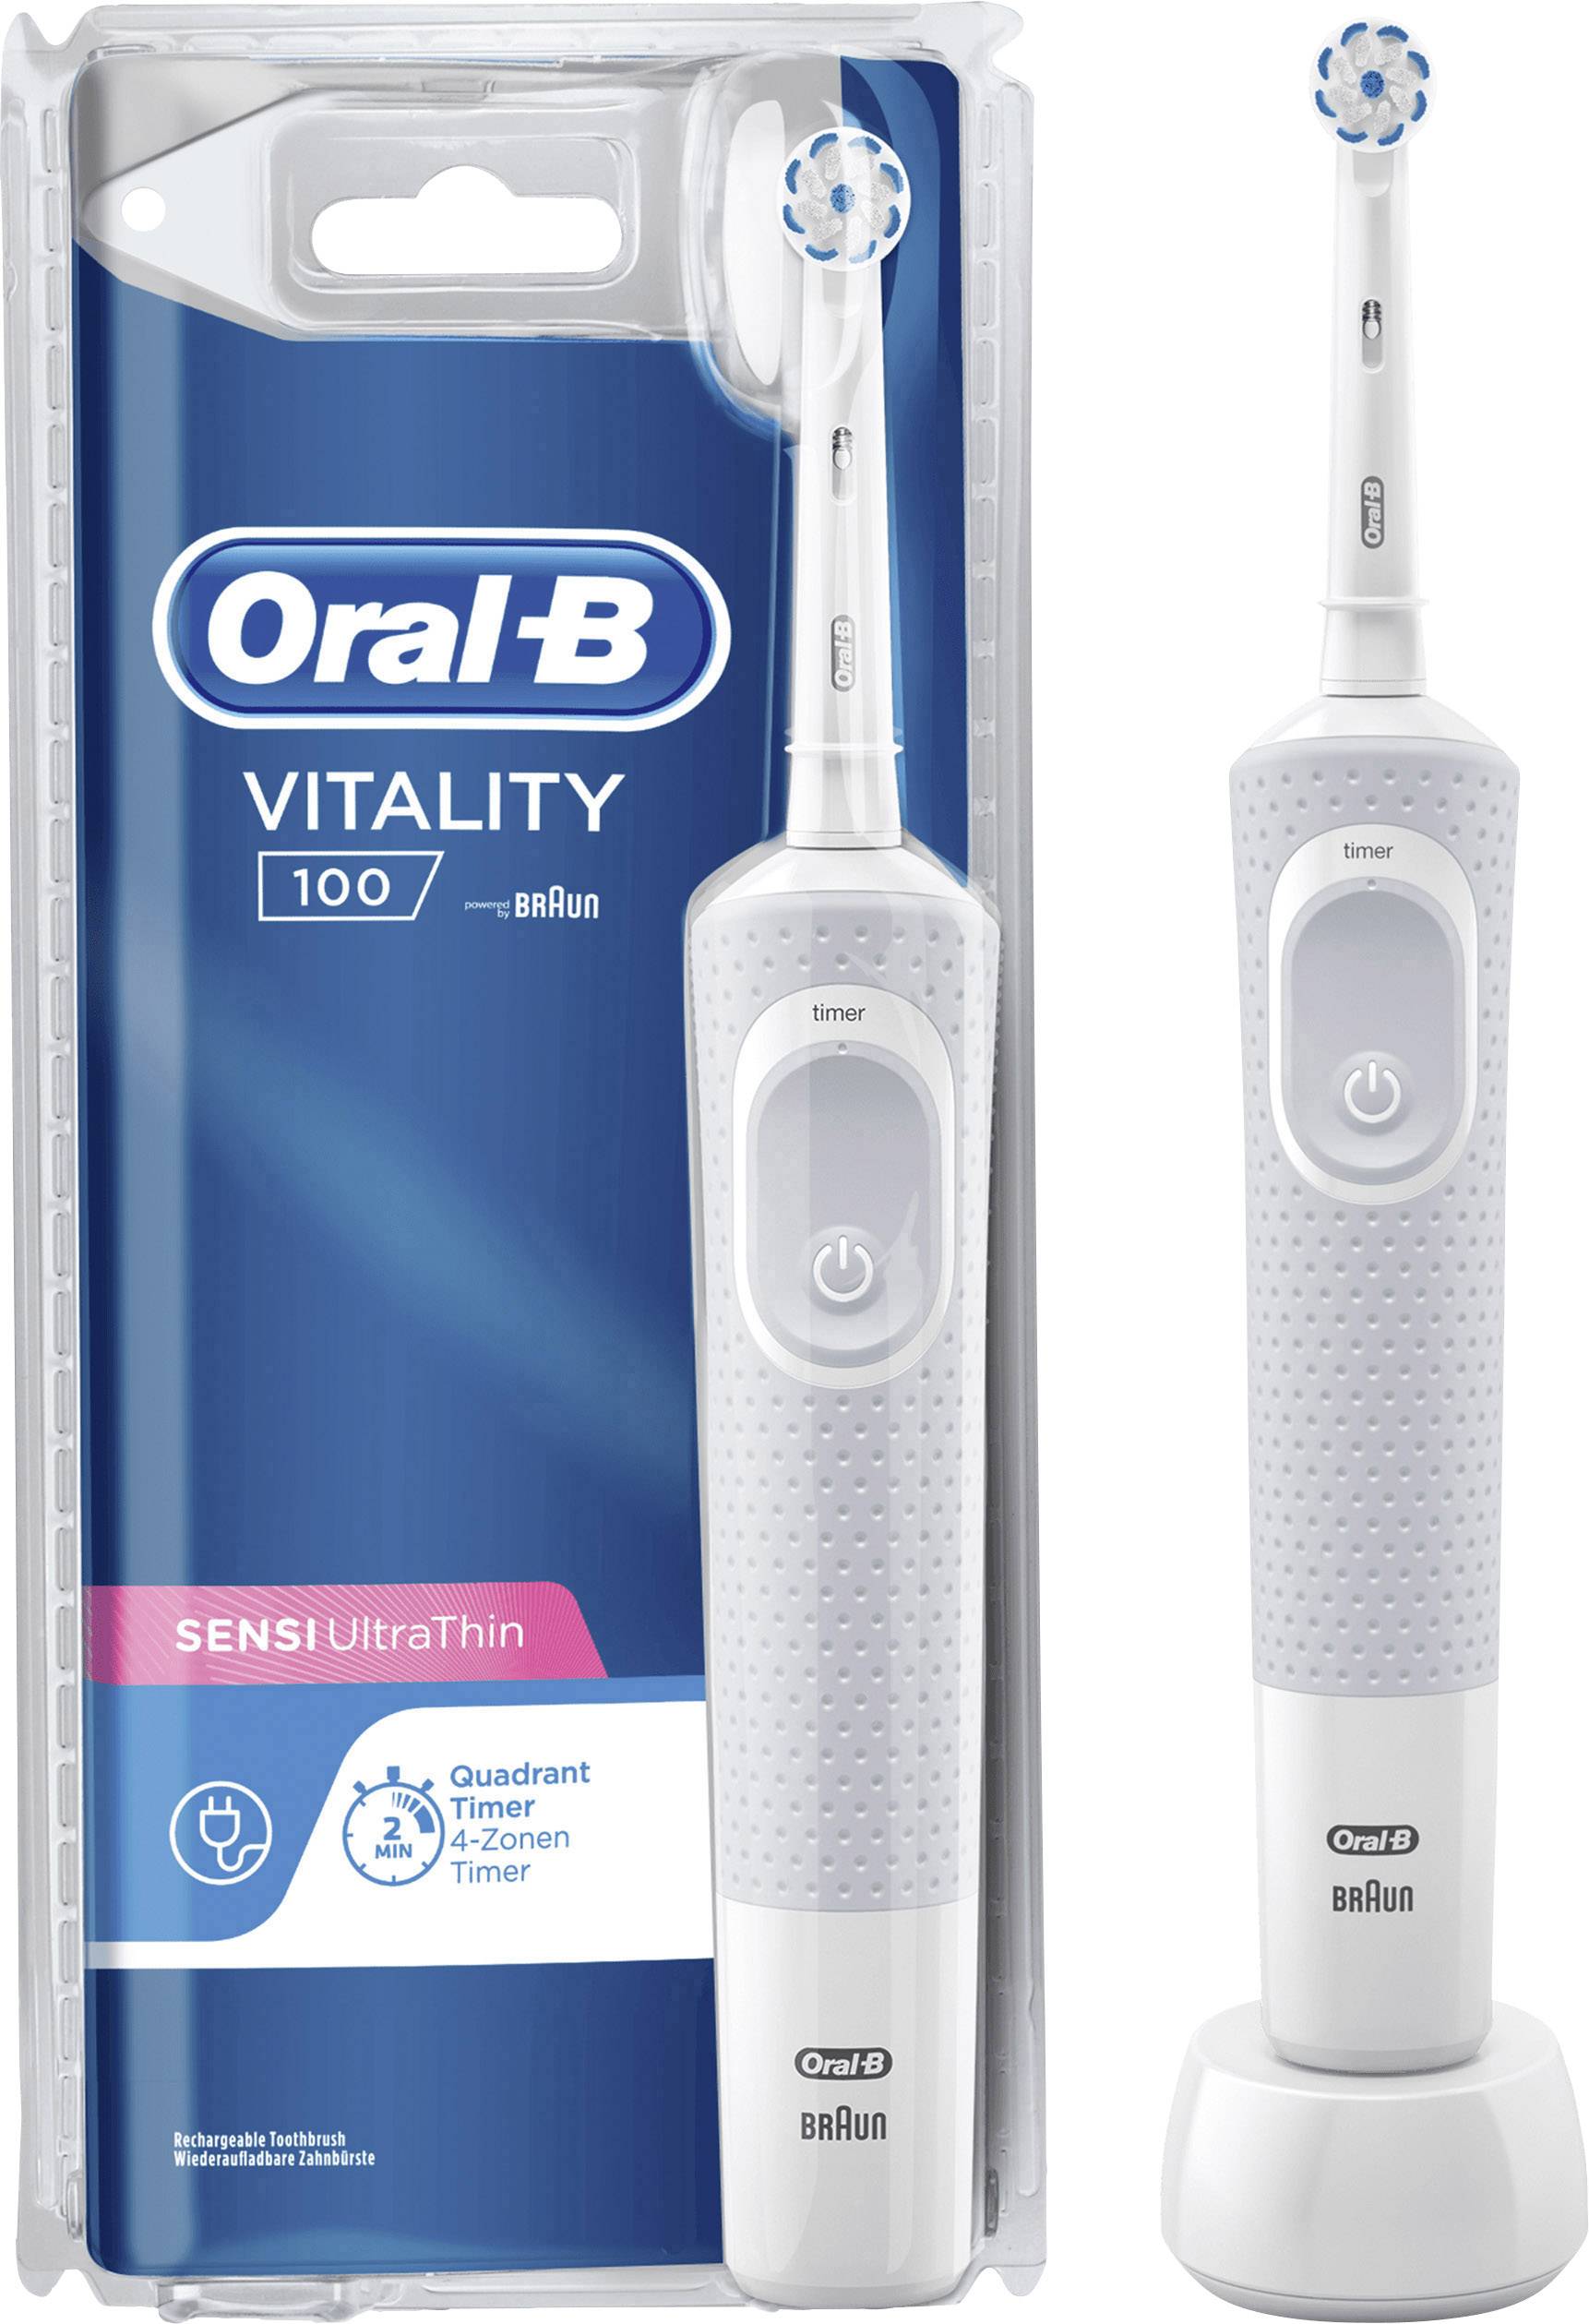 Bàn Chải Đánh Răng Điện Braun Oral-B Vitality 100 - White Edition - BH 12 tháng - 1 đổi 1 trong 7 ngày